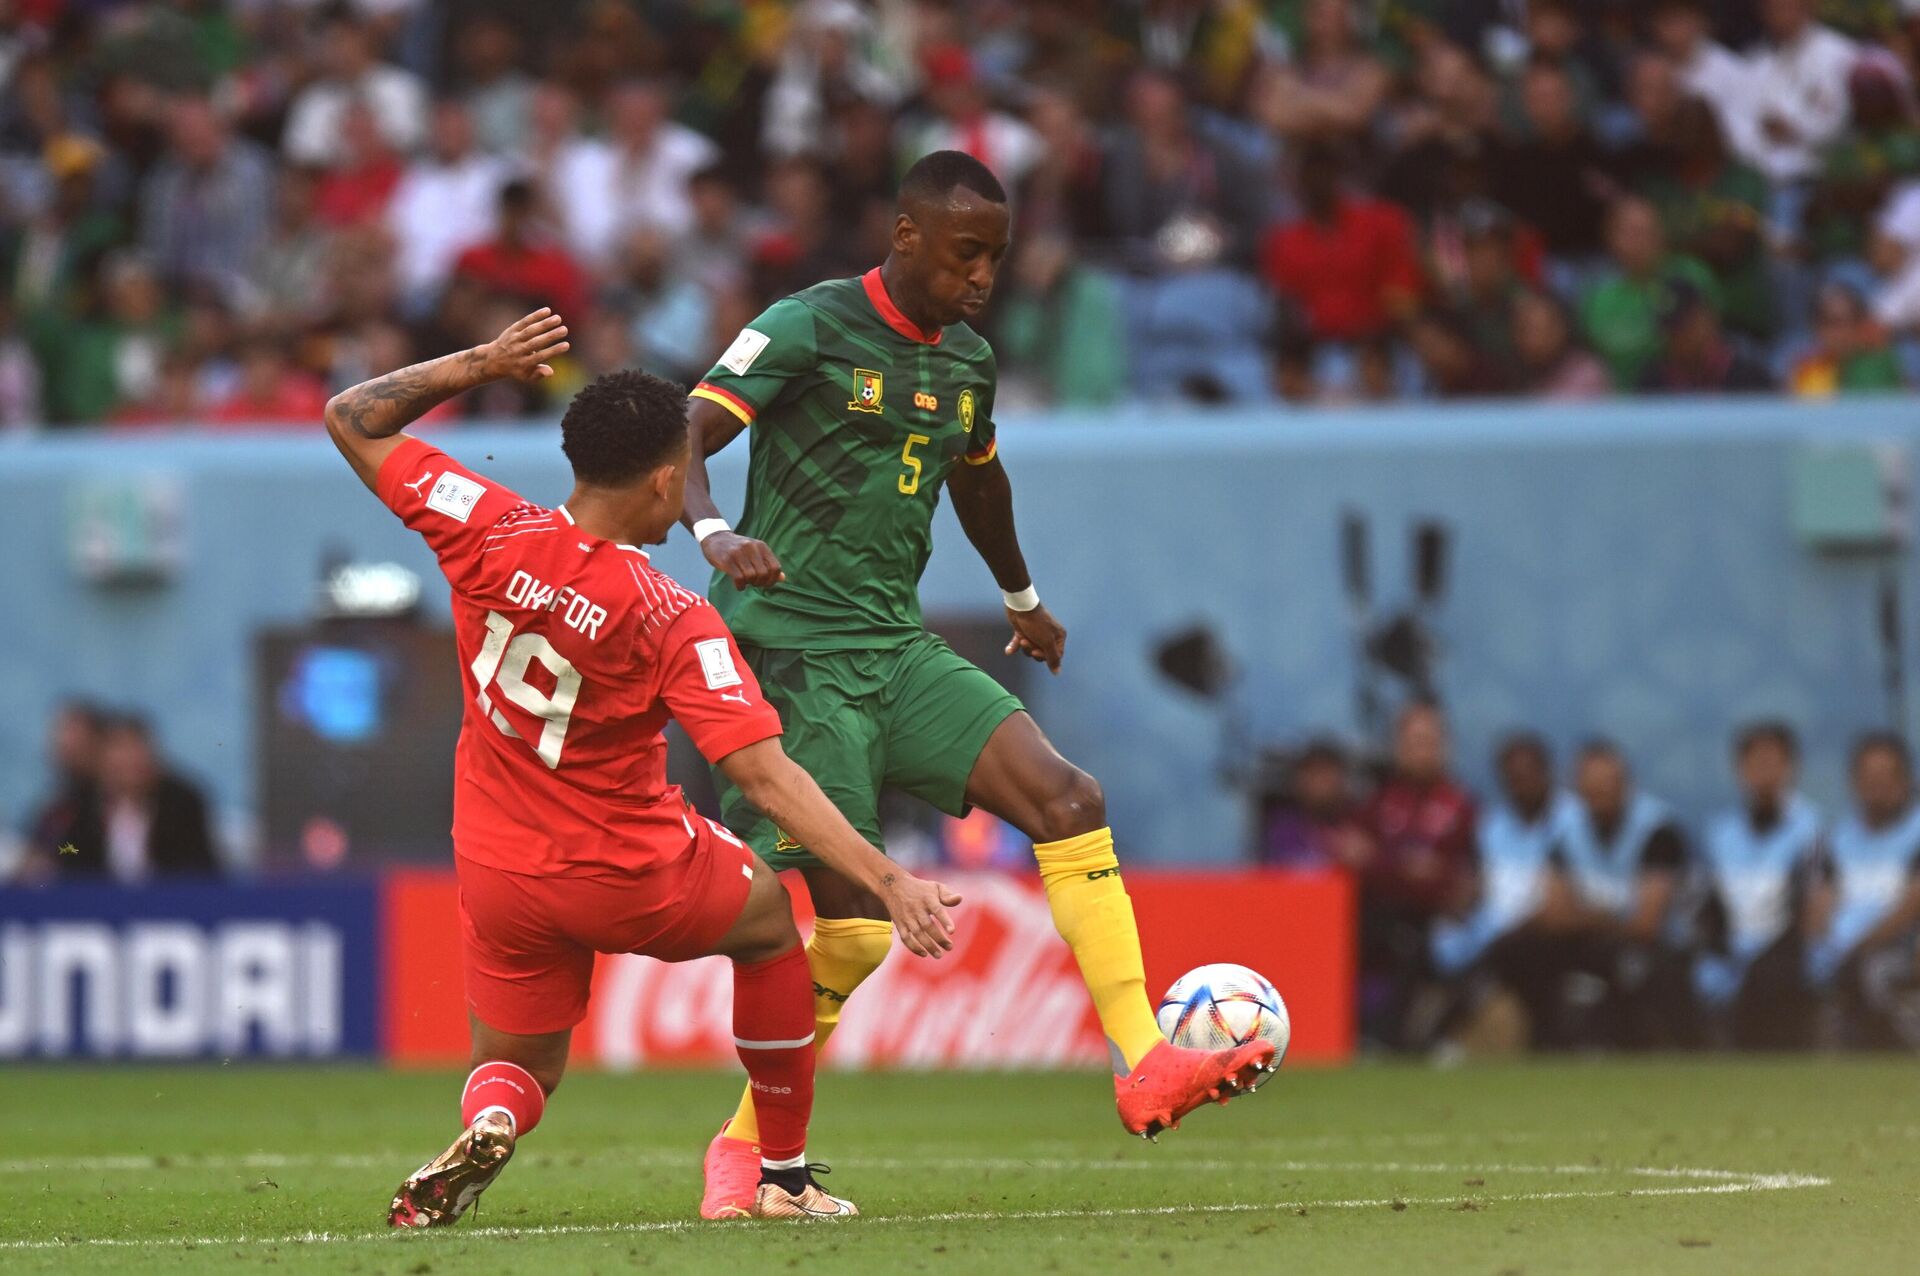 Cầu thủ Noa Okafor của đội tuyển Thụy Sĩ (trái) và Gaël Ondoua của Cameroon trong trận đấu vòng bảng World Cup giữa hai đội tuyển quốc gia Thụy Sĩ và Cameroon. - Sputnik Việt Nam, 1920, 10.12.2022